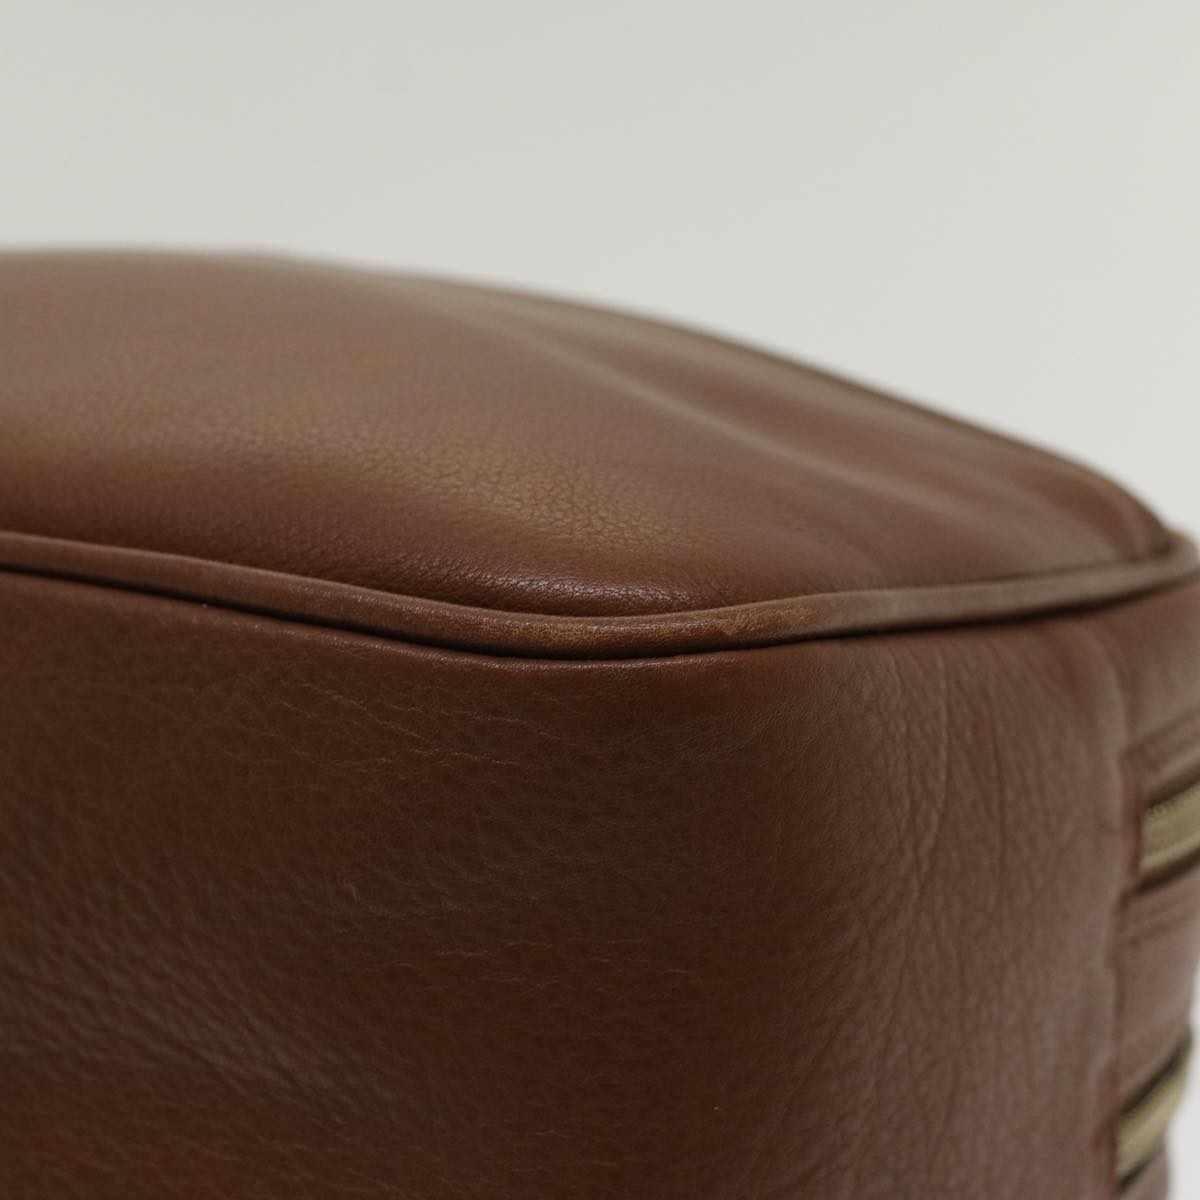 BALENCIAGA Clutch Bag Leather Brown Auth bs7730